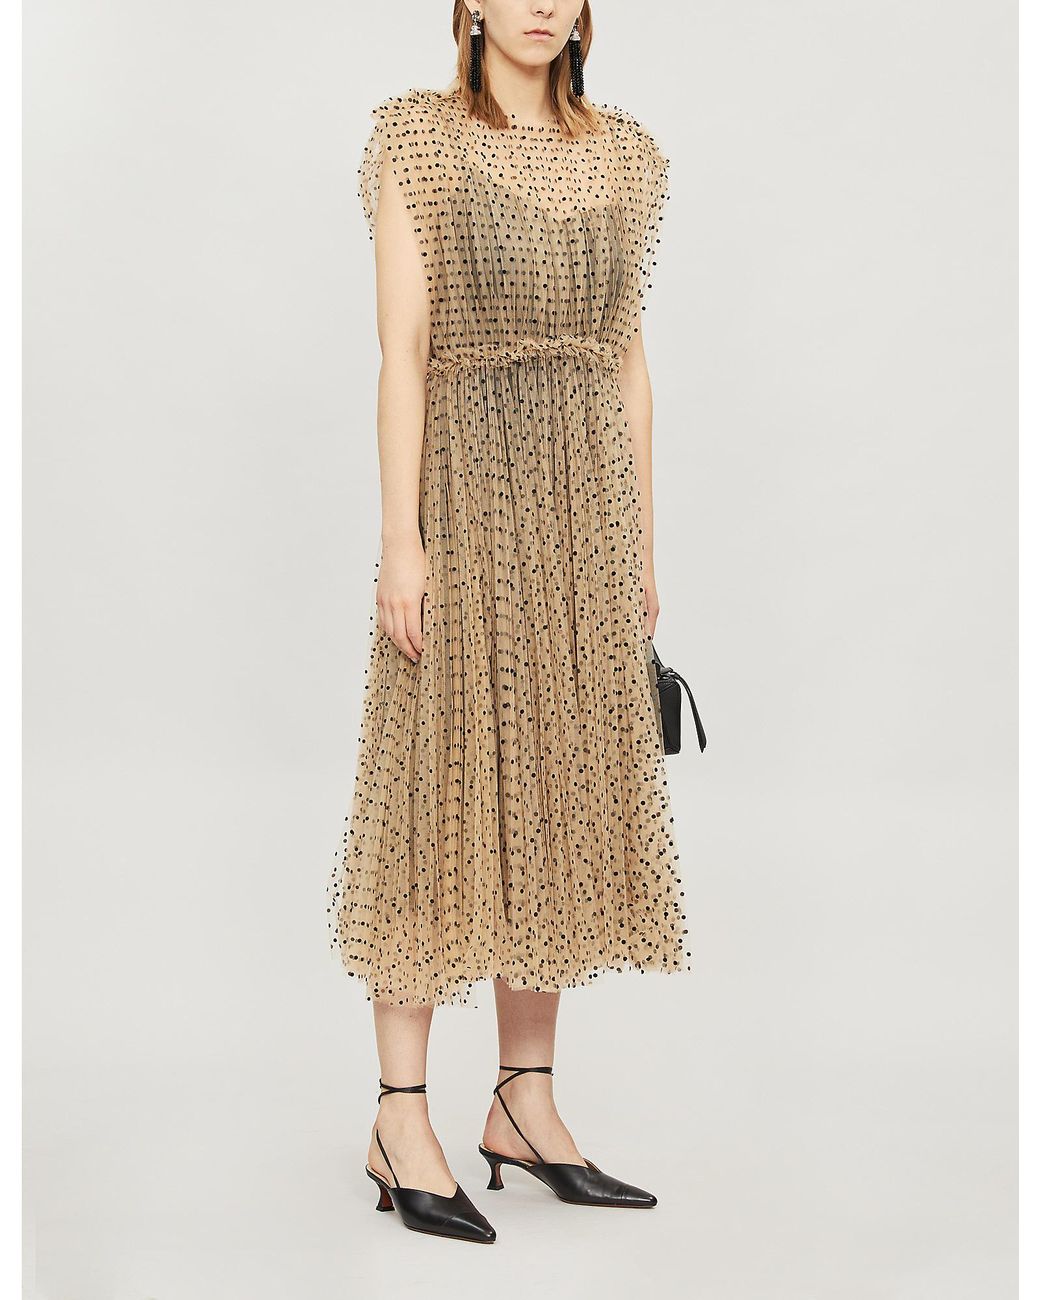 Khaite Alix Polka Dot-patterned Tulle Dress in Natural | Lyst